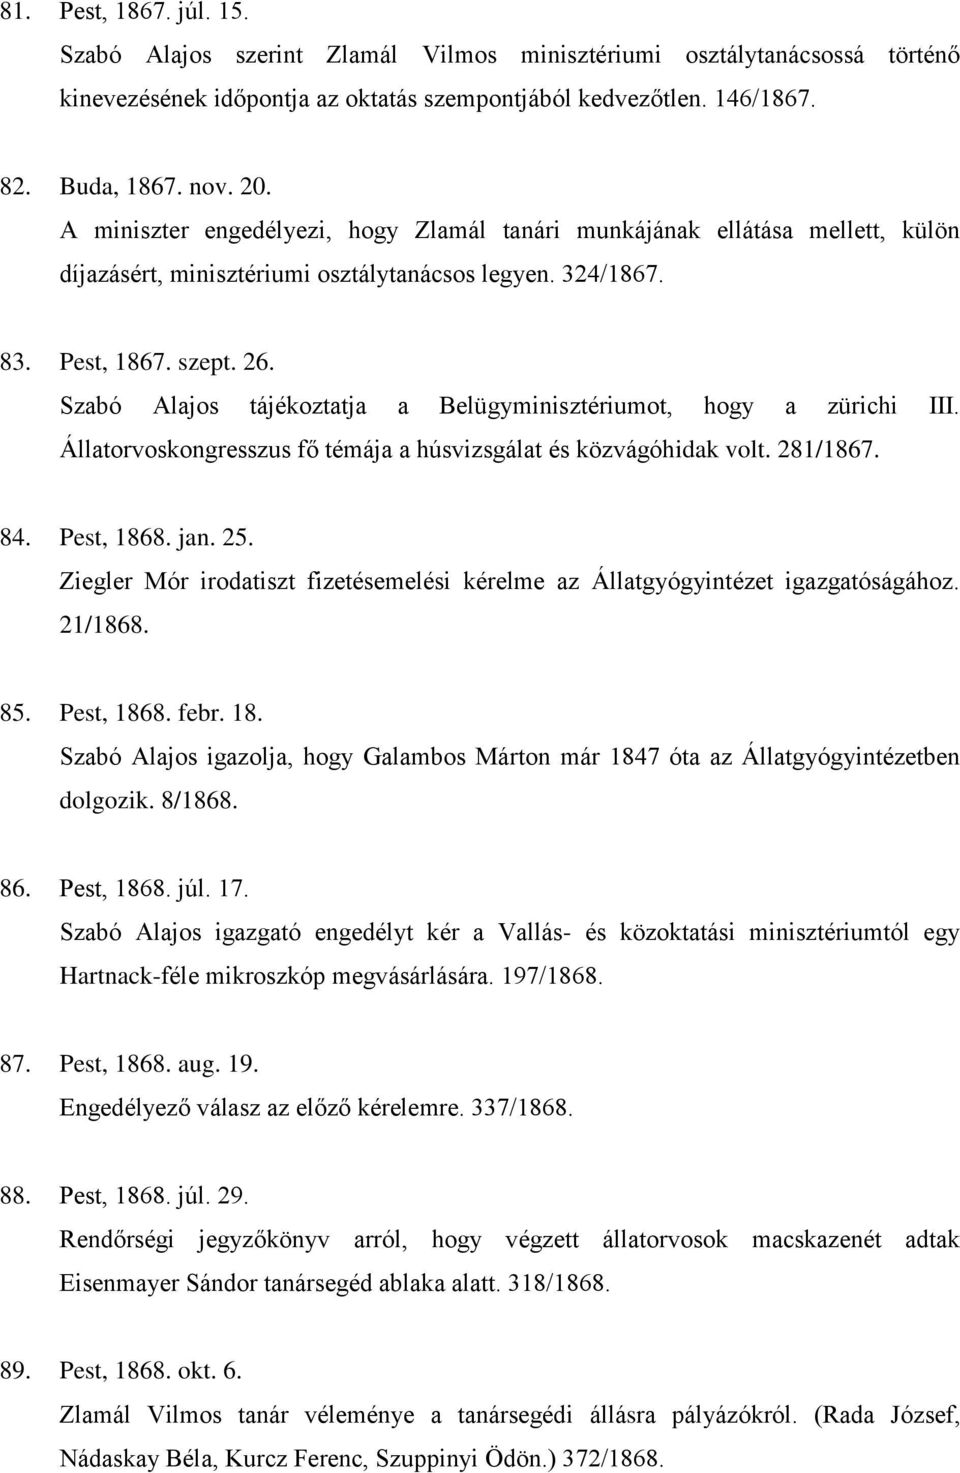 Szabó Alajos tájékoztatja a Belügyminisztériumot, hogy a zürichi III. Állatorvoskongresszus fő témája a húsvizsgálat és közvágóhidak volt. 281/1867. 84. Pest, 1868. jan. 25.